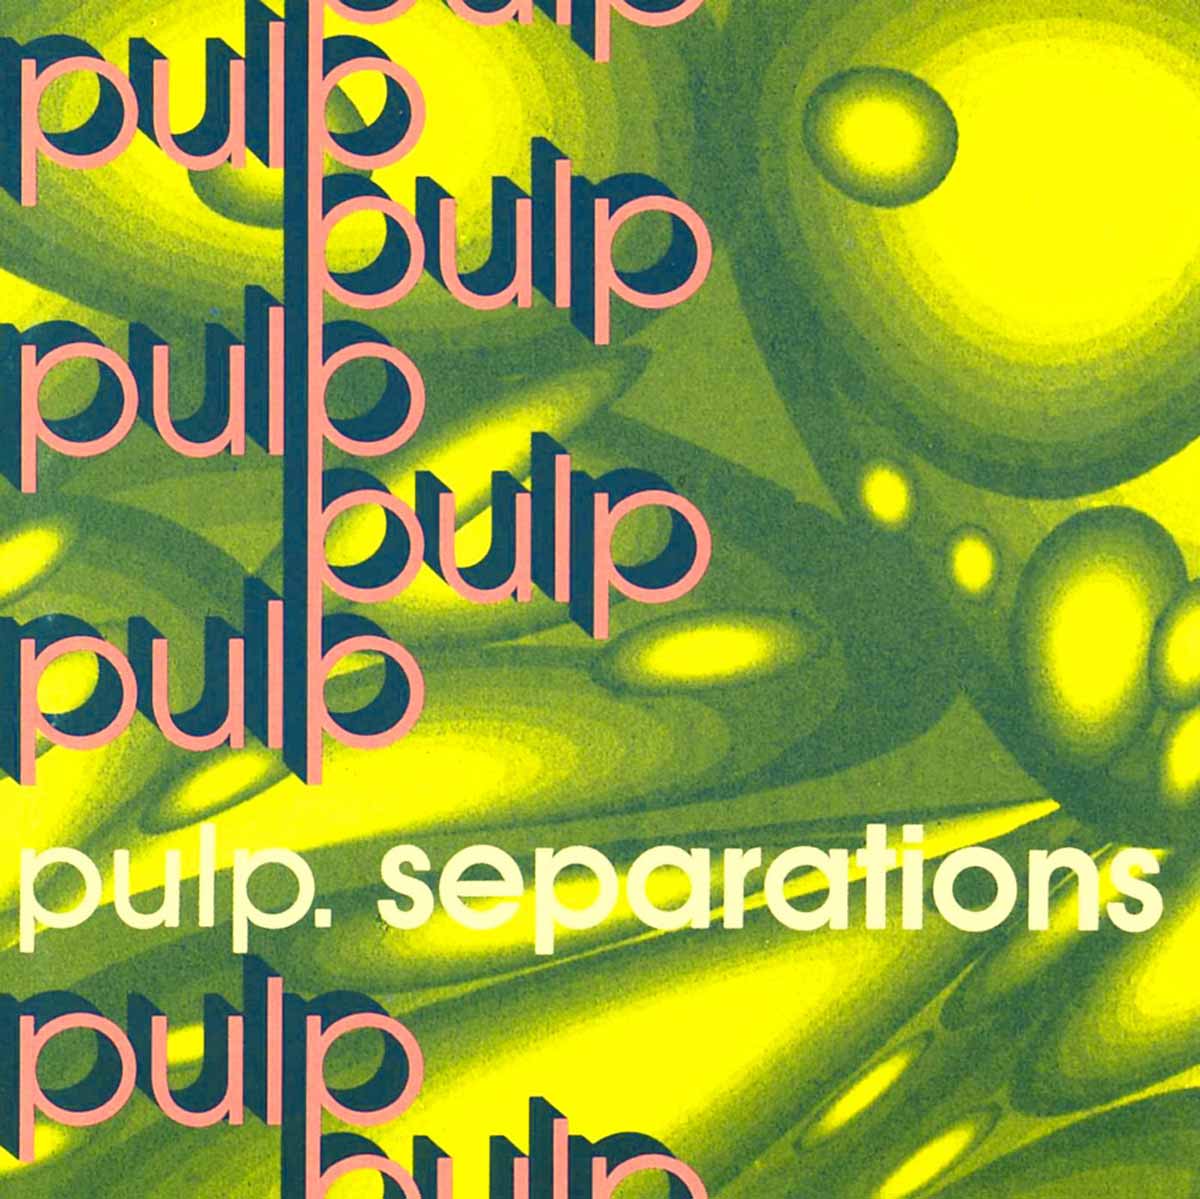 separations de pulp